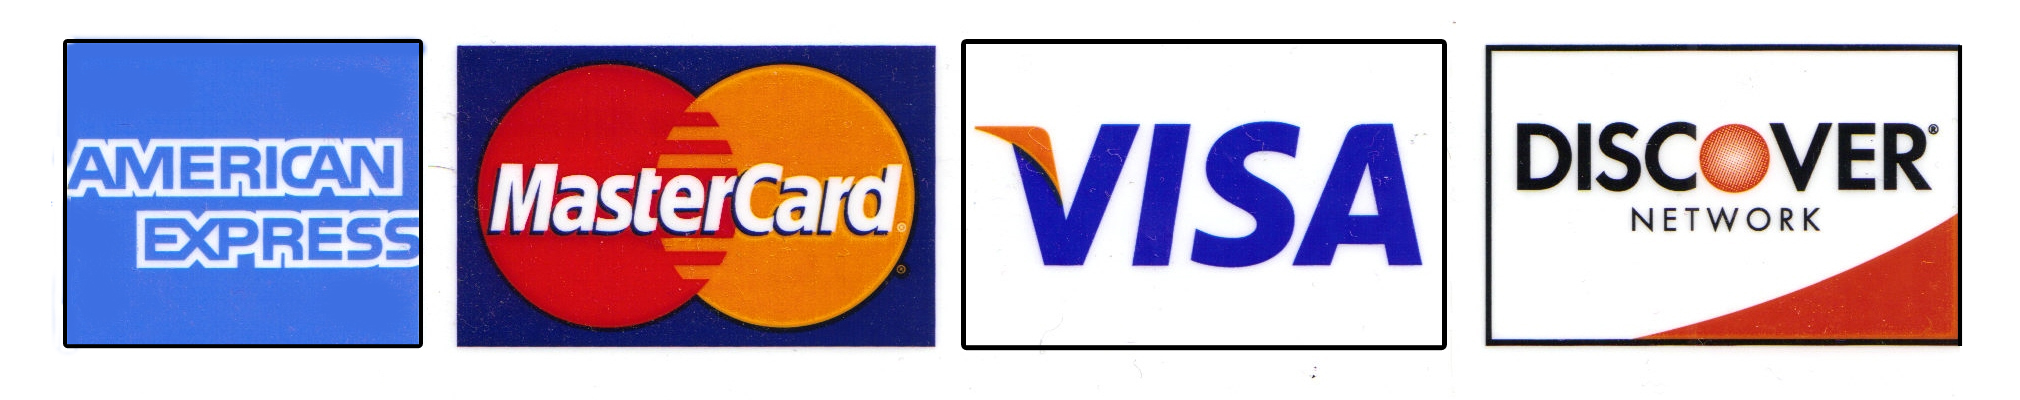 Visa Mastercard Discover Credit Card Logos